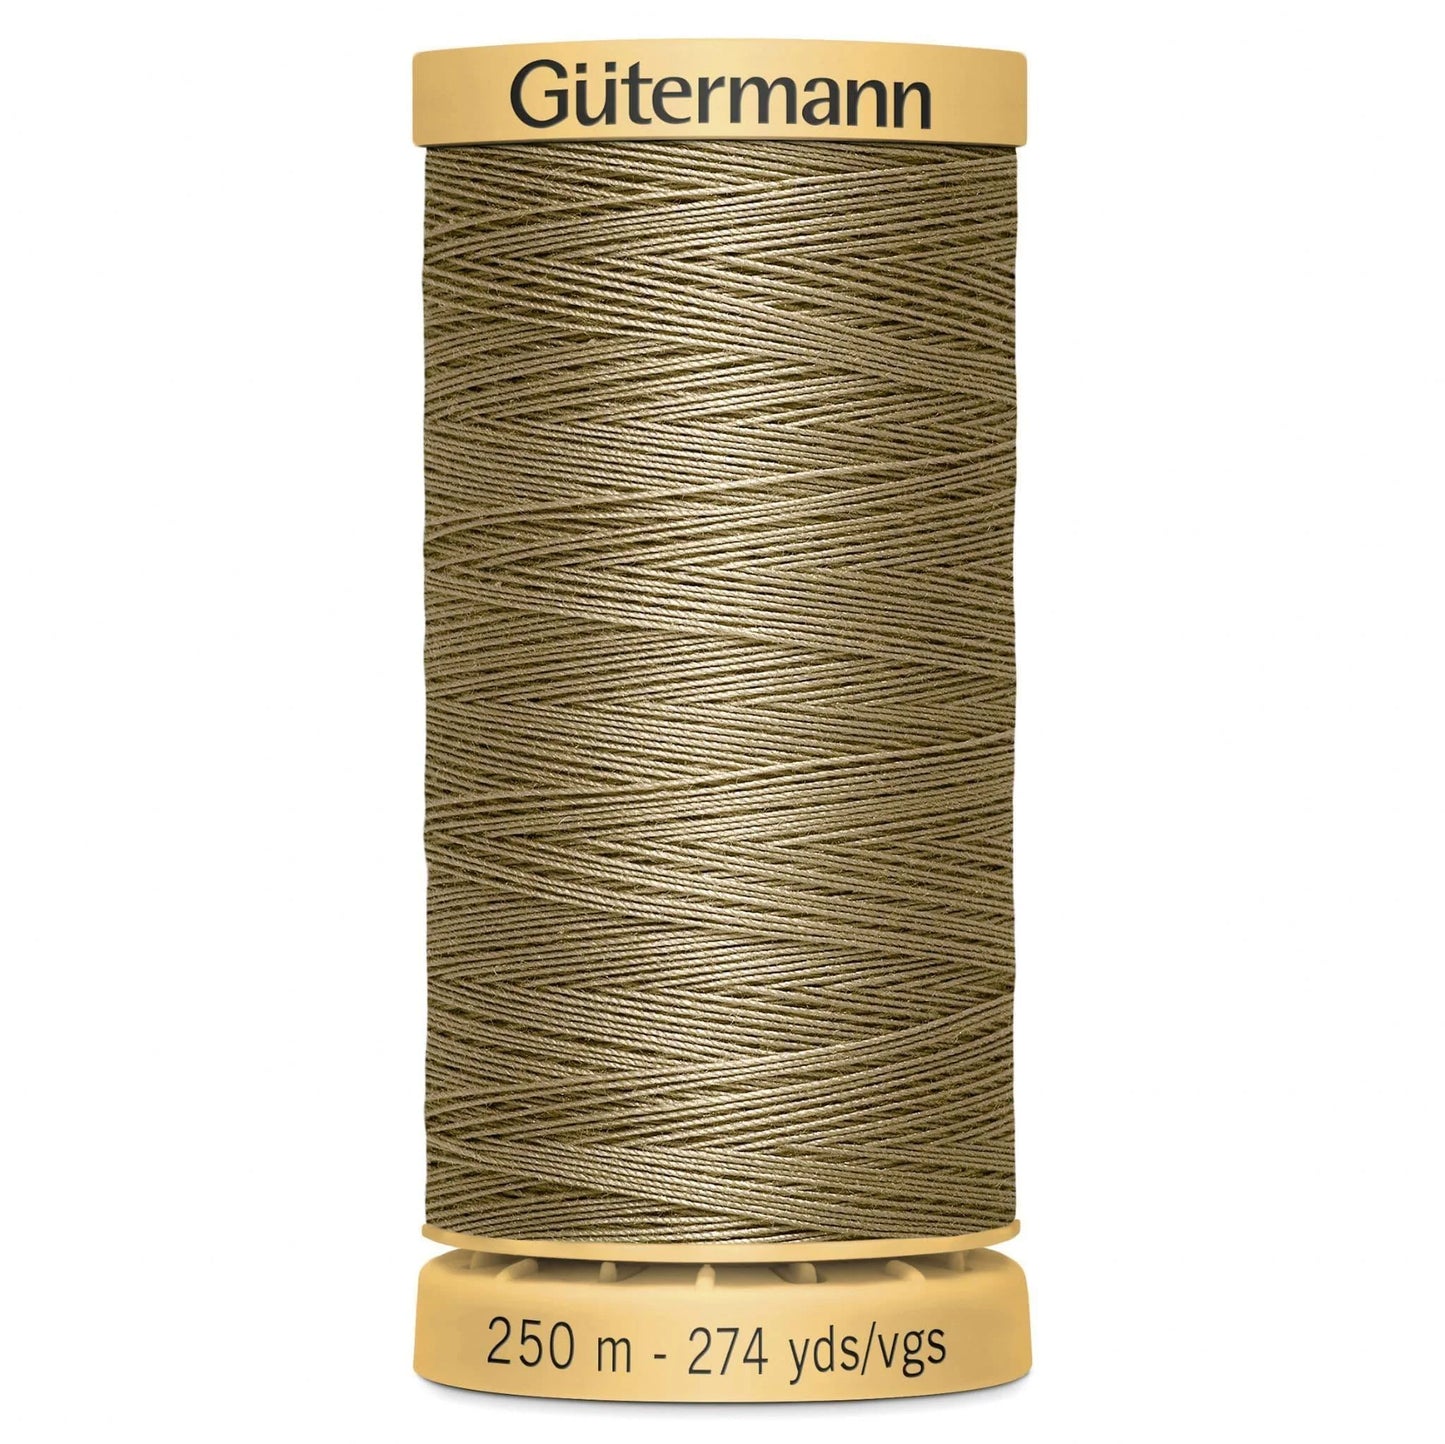 1015 Gutermann Natural Cotton Thread 250m - Medium Beige